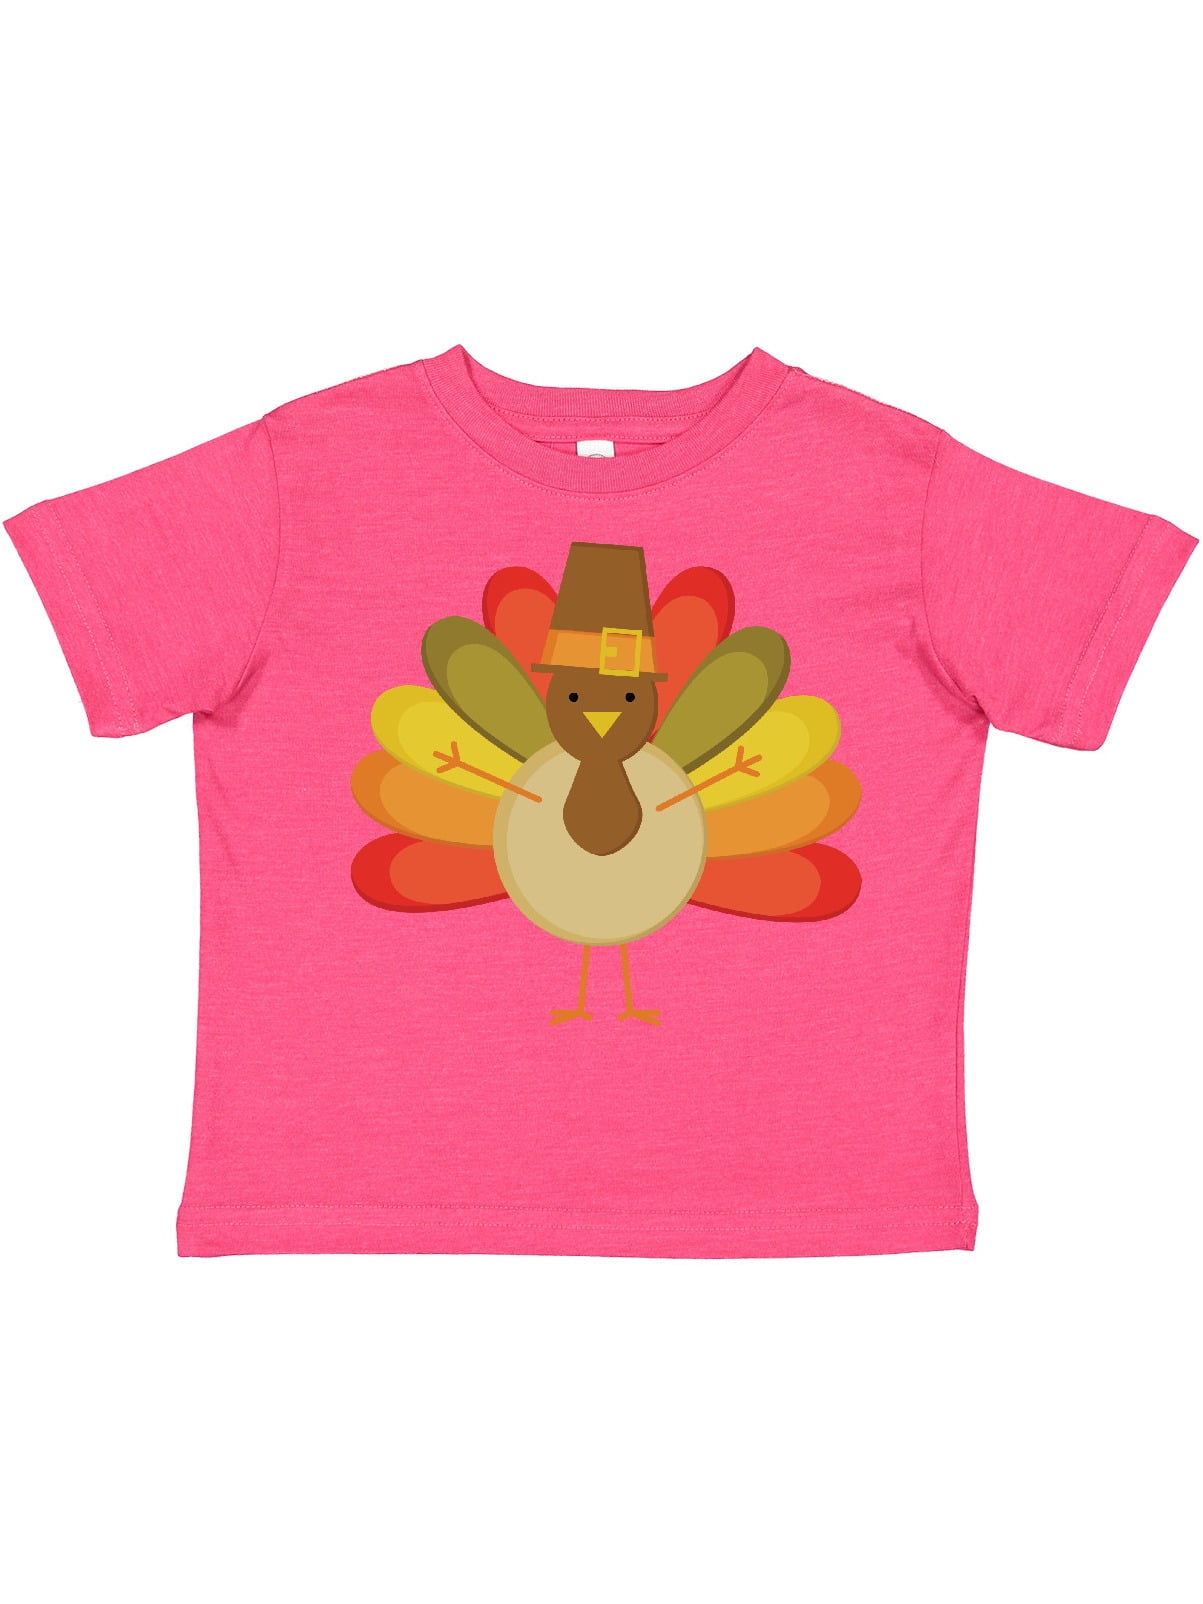 Pilgrim Turkey Face T-Shirt Gobble Gobble Gift Unisex Thanksgiving Dinner Turkey Costume Shirt TShirt on Happy Thanksgiving Day 2021